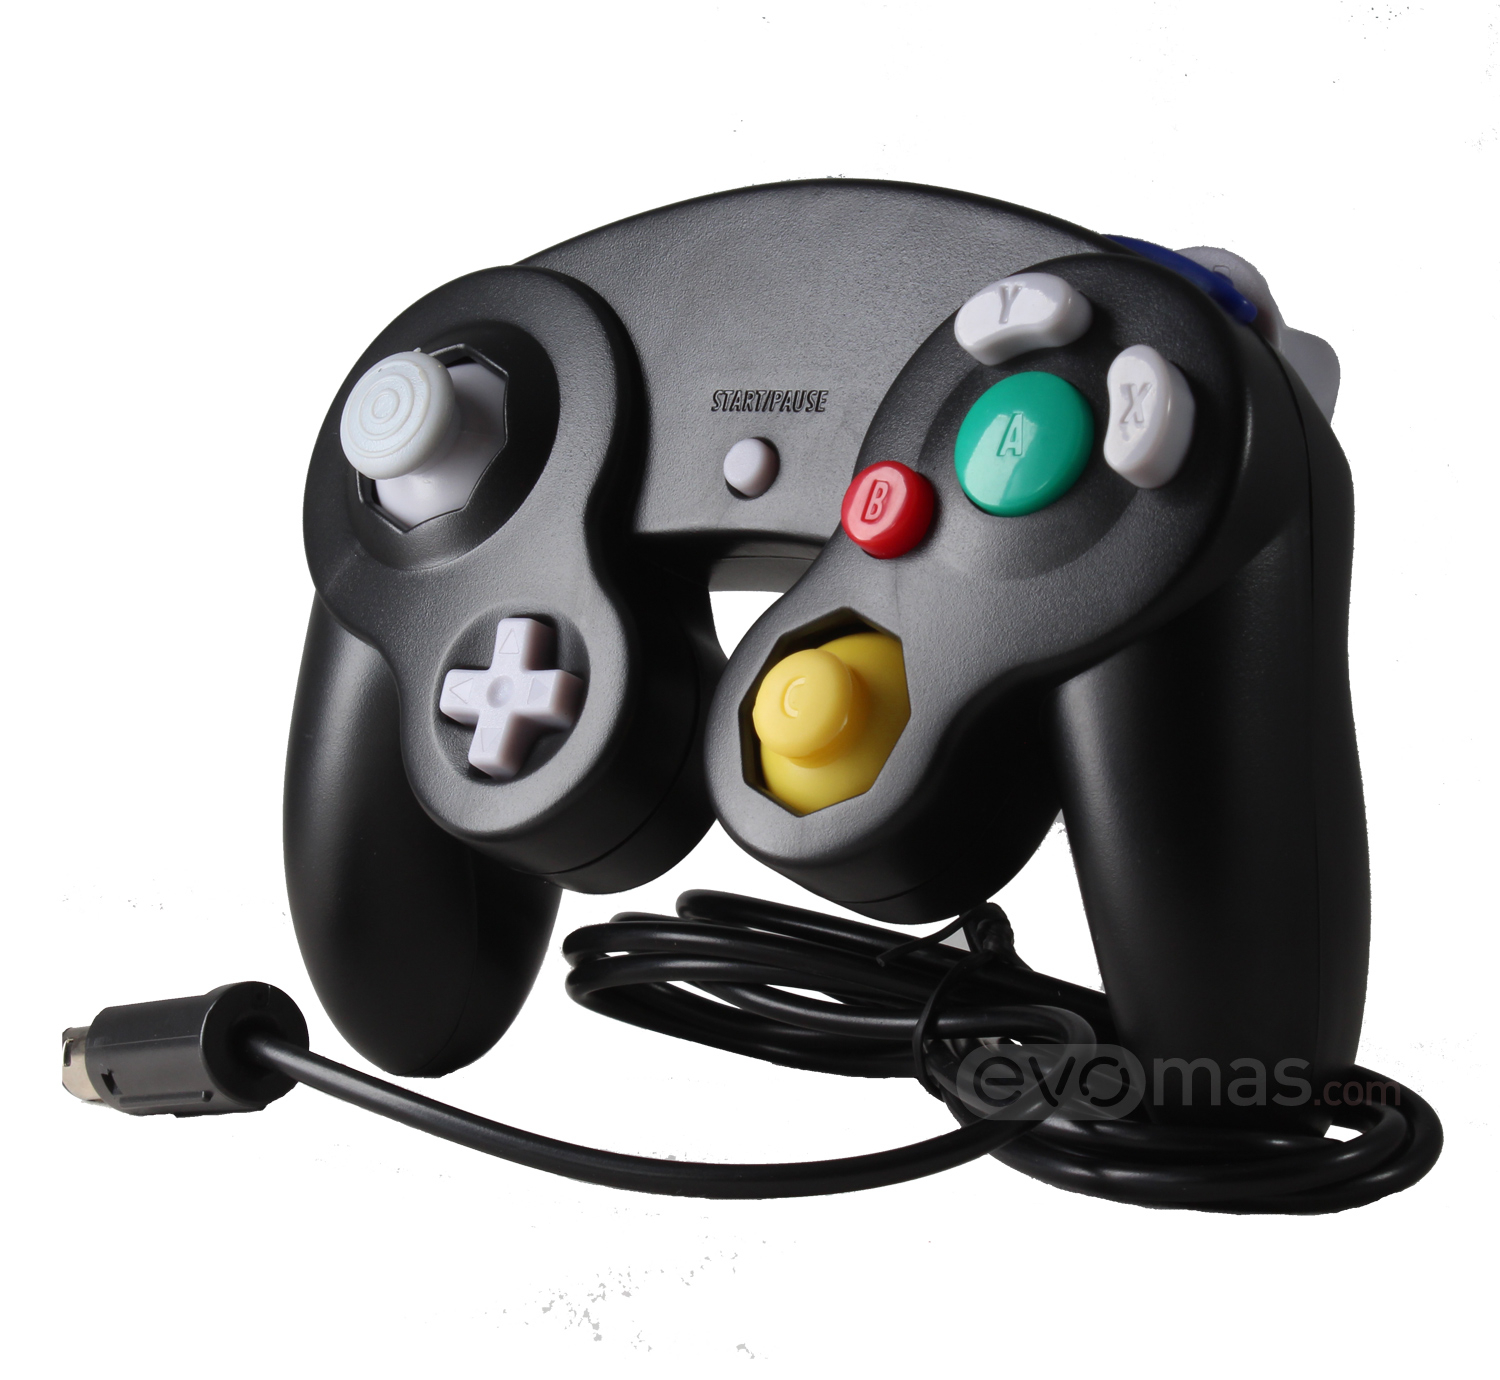 Control para GameCube y Wii Nuevo de Paquete TTX Tech Game Cube-Negro